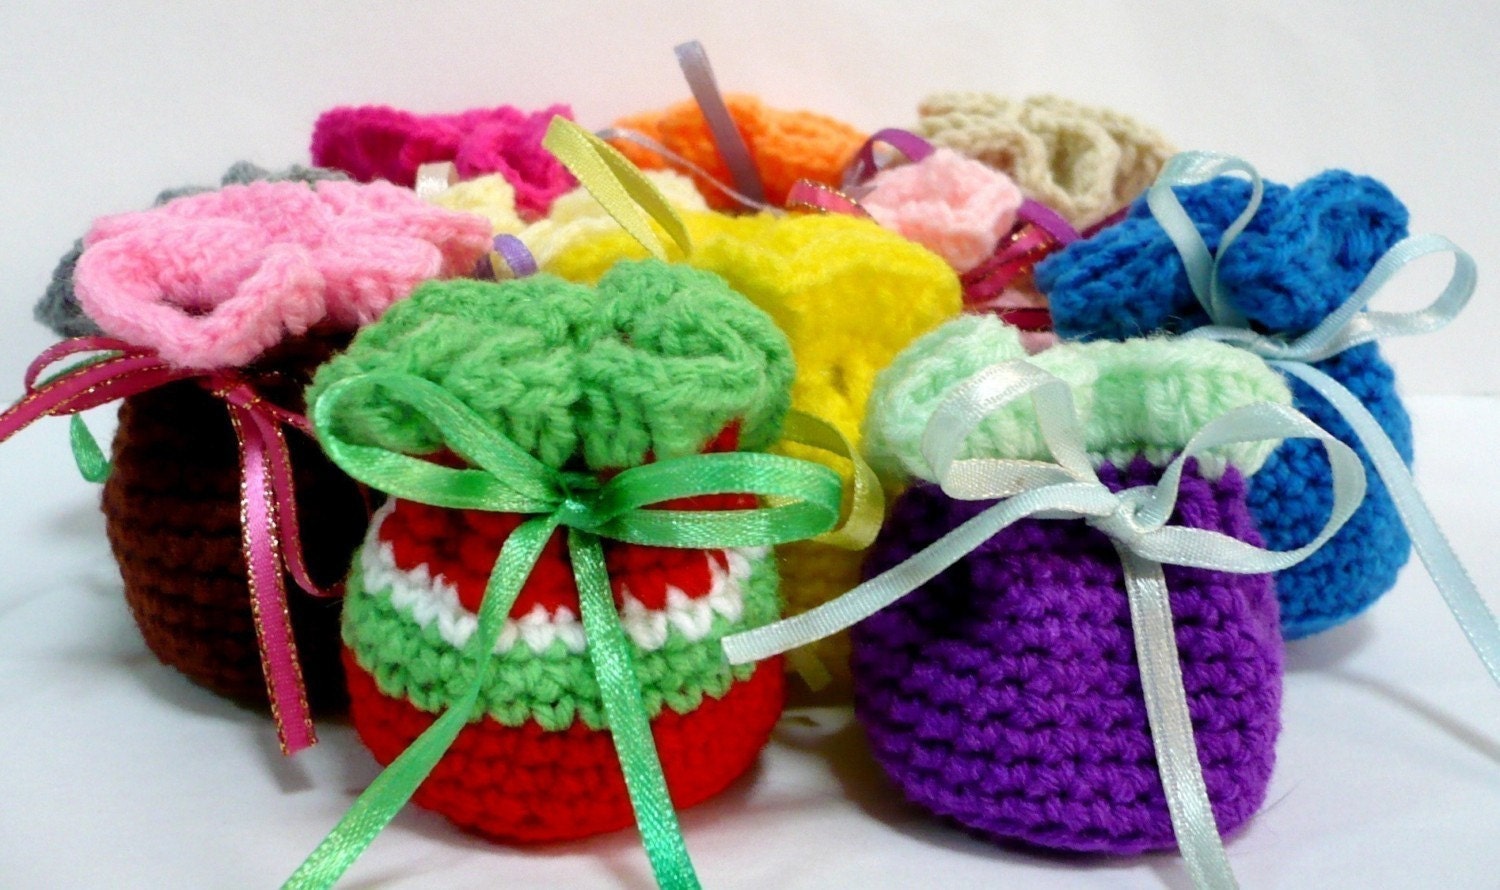 Crochet Bag Pattern Small Pouch Crochet Pattern PDF by melbangel